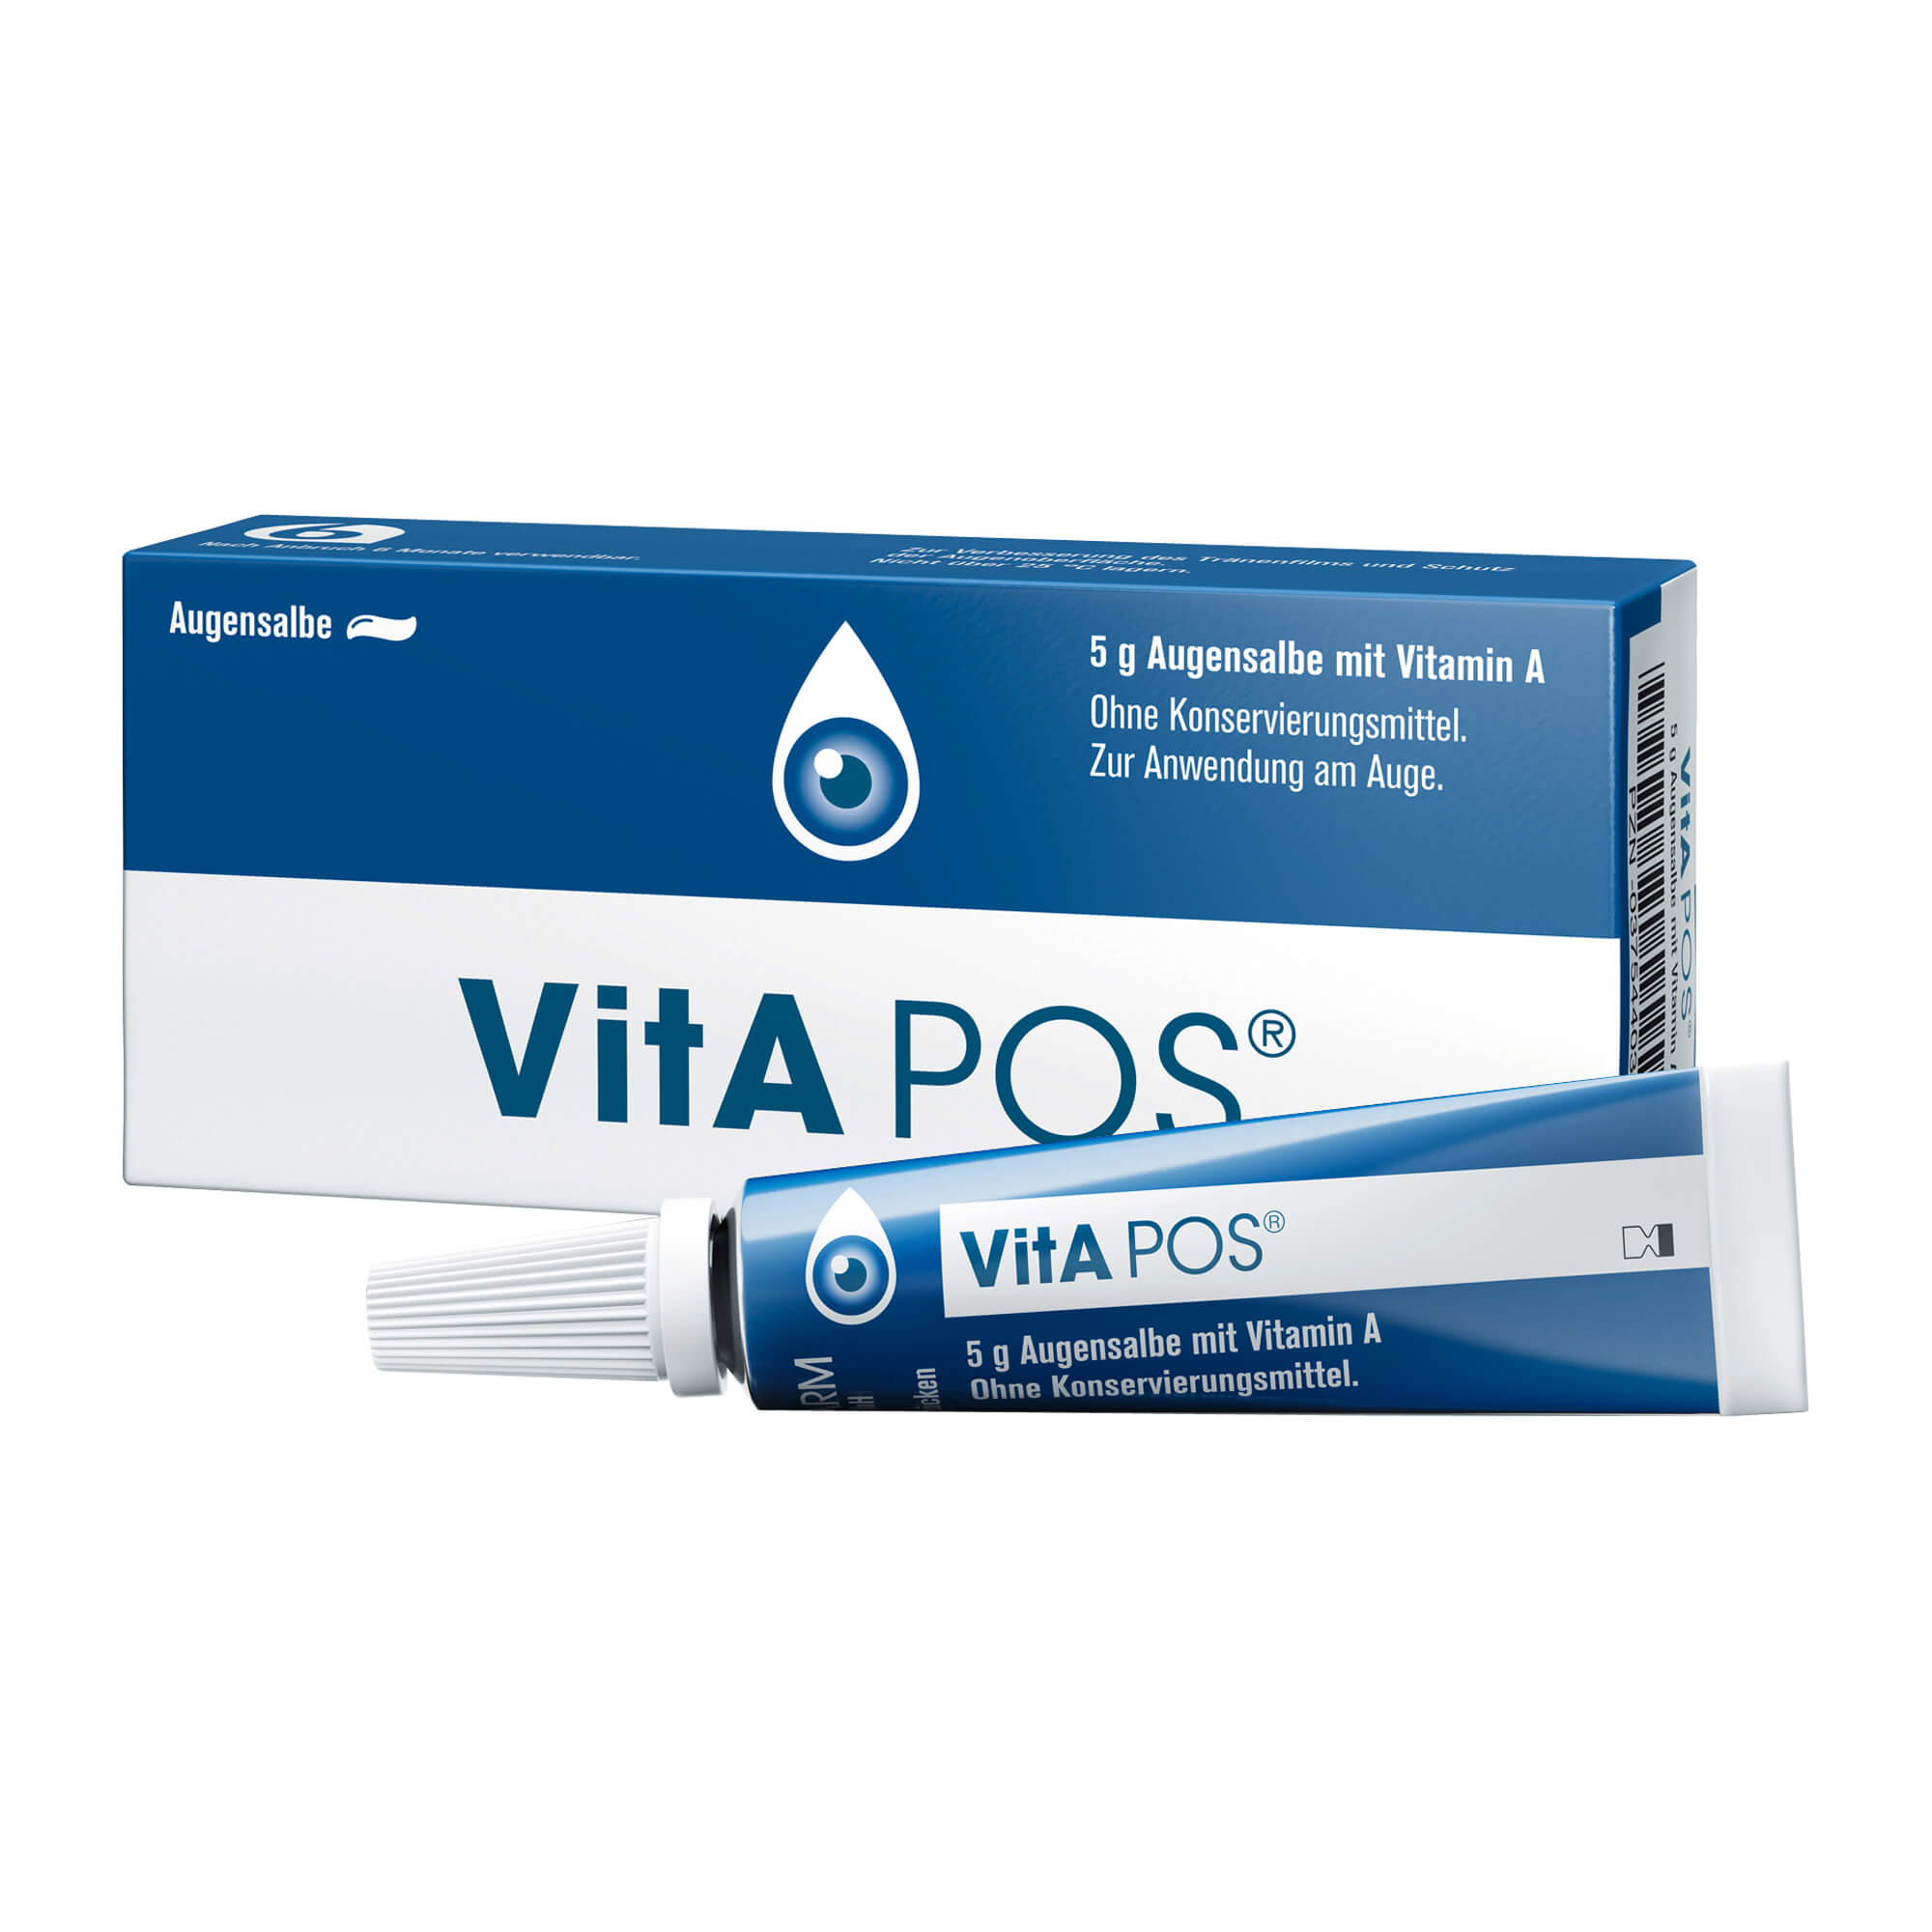 Vitamin A-haltige Augensalbe ohne Konservierungsmittel.